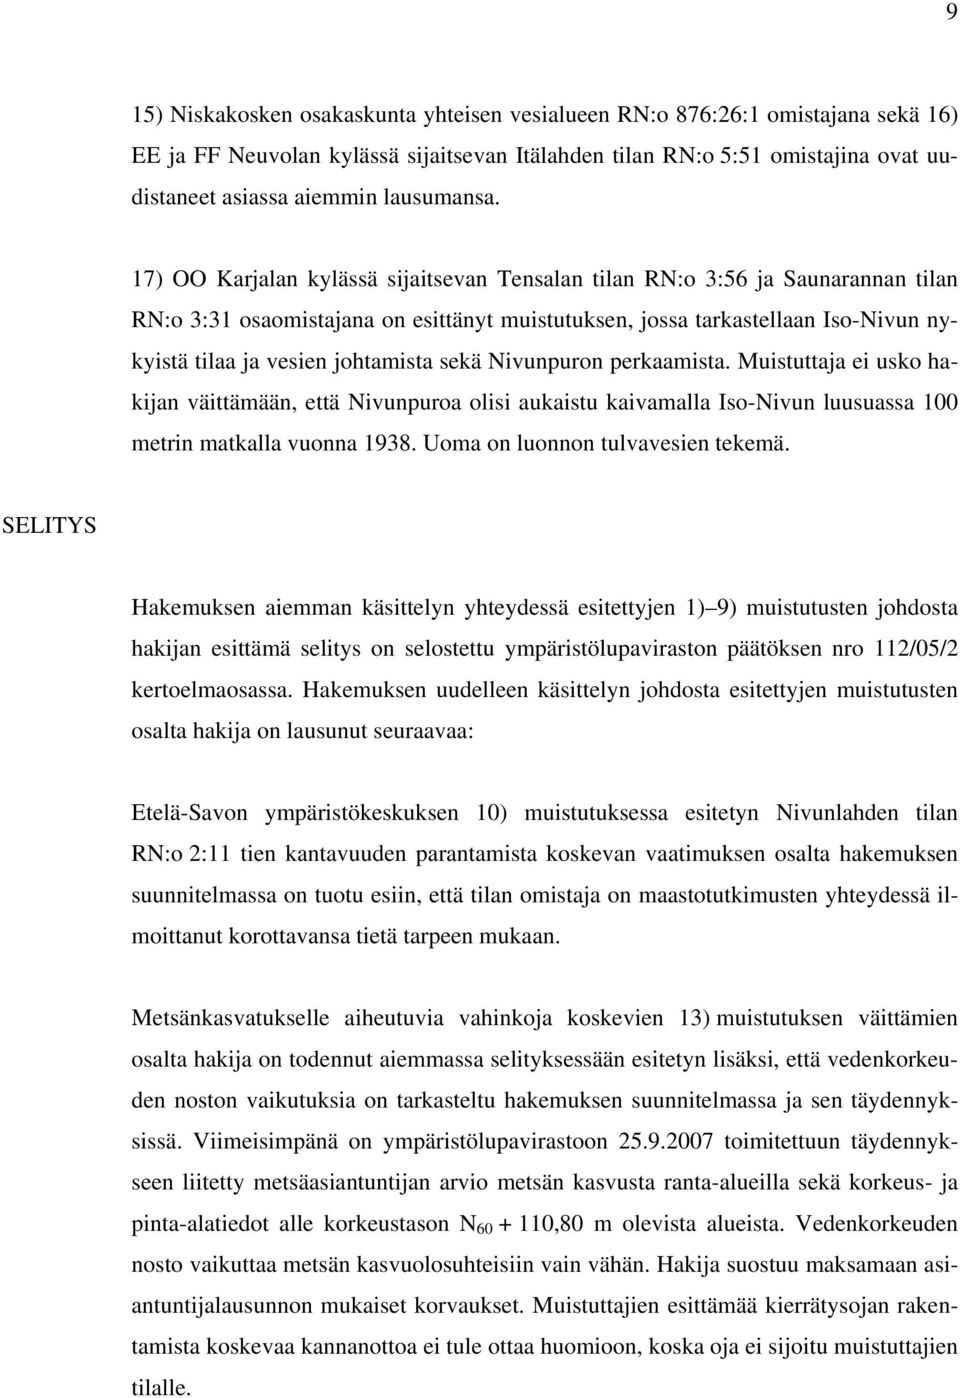 17) OO Karjalan kylässä sijaitsevan Tensalan tilan RN:o 3:56 ja Saunarannan tilan RN:o 3:31 osaomistajana on esittänyt muistutuksen, jossa tarkastellaan Iso-Nivun nykyistä tilaa ja vesien johtamista